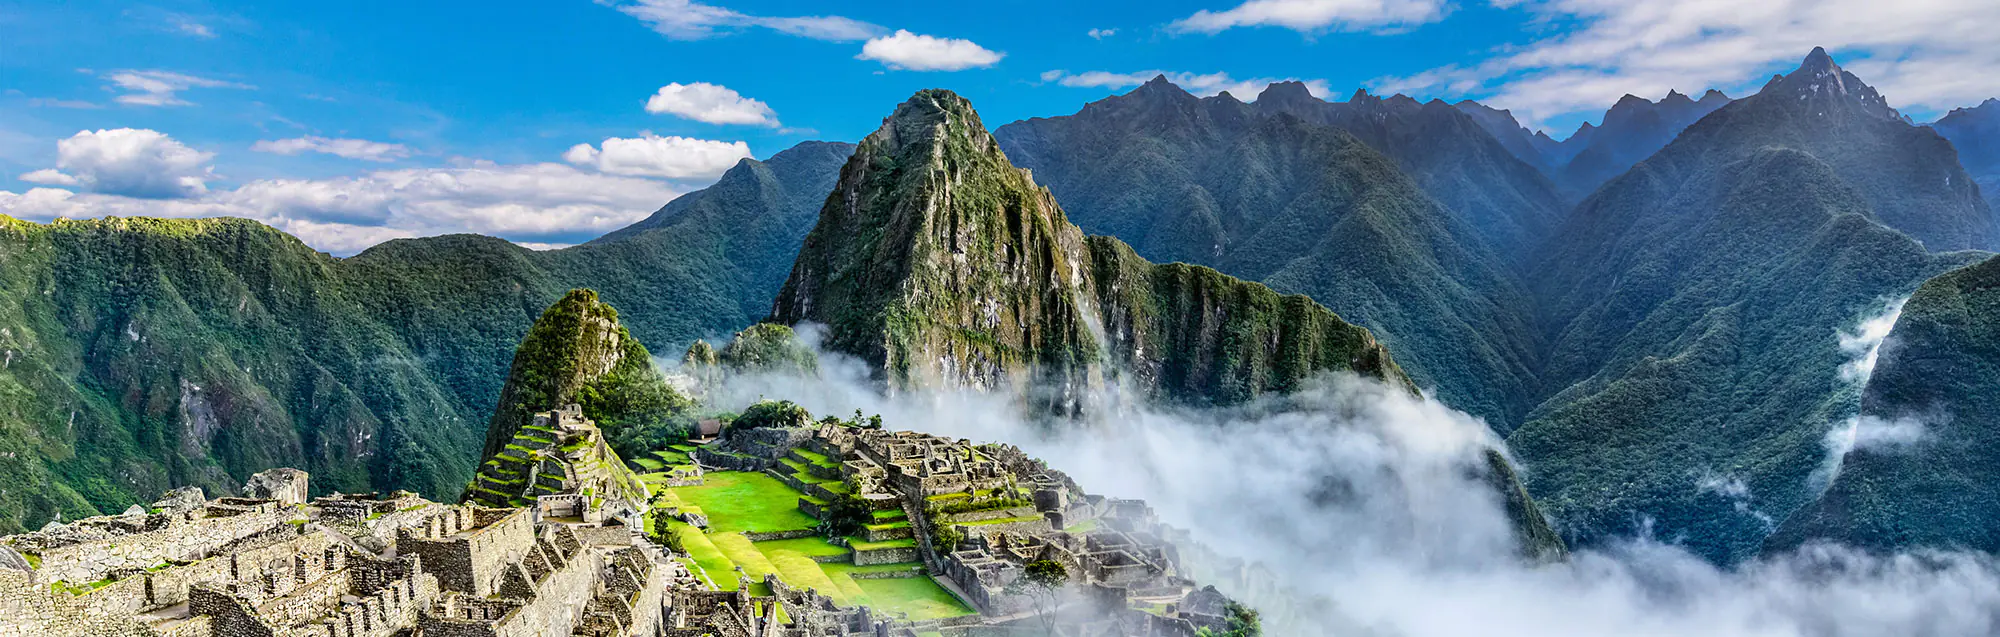 Ai-je besoin d'un visa pour Pérou ?